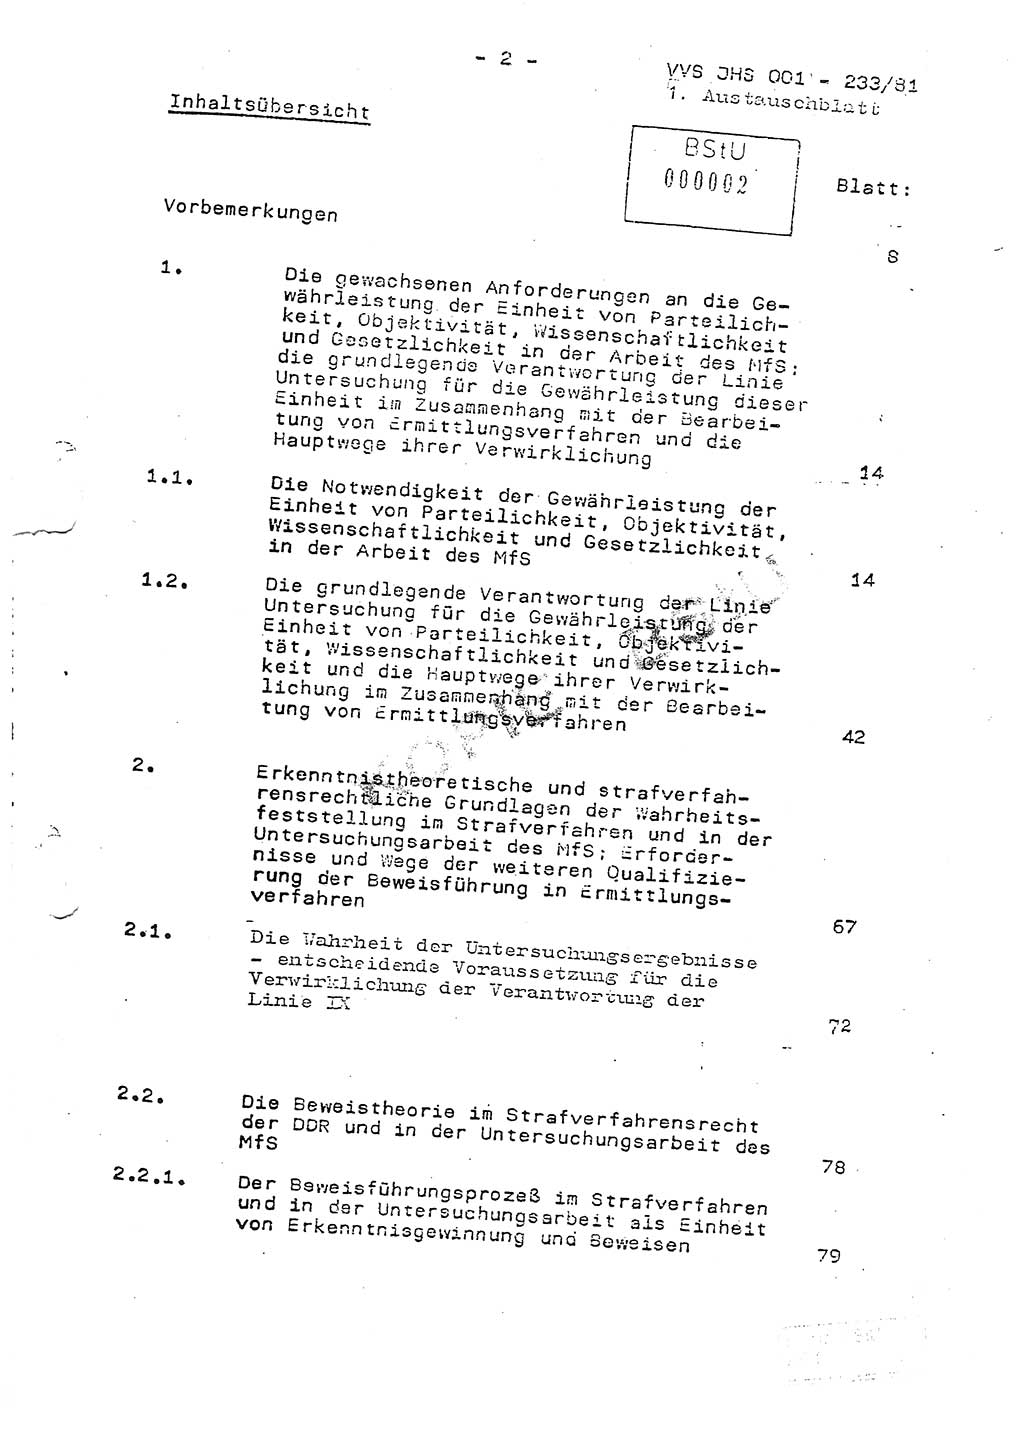 Dissertation Oberstleutnant Horst Zank (JHS), Oberstleutnant Dr. Karl-Heinz Knoblauch (JHS), Oberstleutnant Gustav-Adolf Kowalewski (HA Ⅸ), Oberstleutnant Wolfgang Plötner (HA Ⅸ), Ministerium für Staatssicherheit (MfS) [Deutsche Demokratische Republik (DDR)], Juristische Hochschule (JHS), Vertrauliche Verschlußsache (VVS) o001-233/81, Potsdam 1981, Blatt 2 (Diss. MfS DDR JHS VVS o001-233/81 1981, Bl. 2)